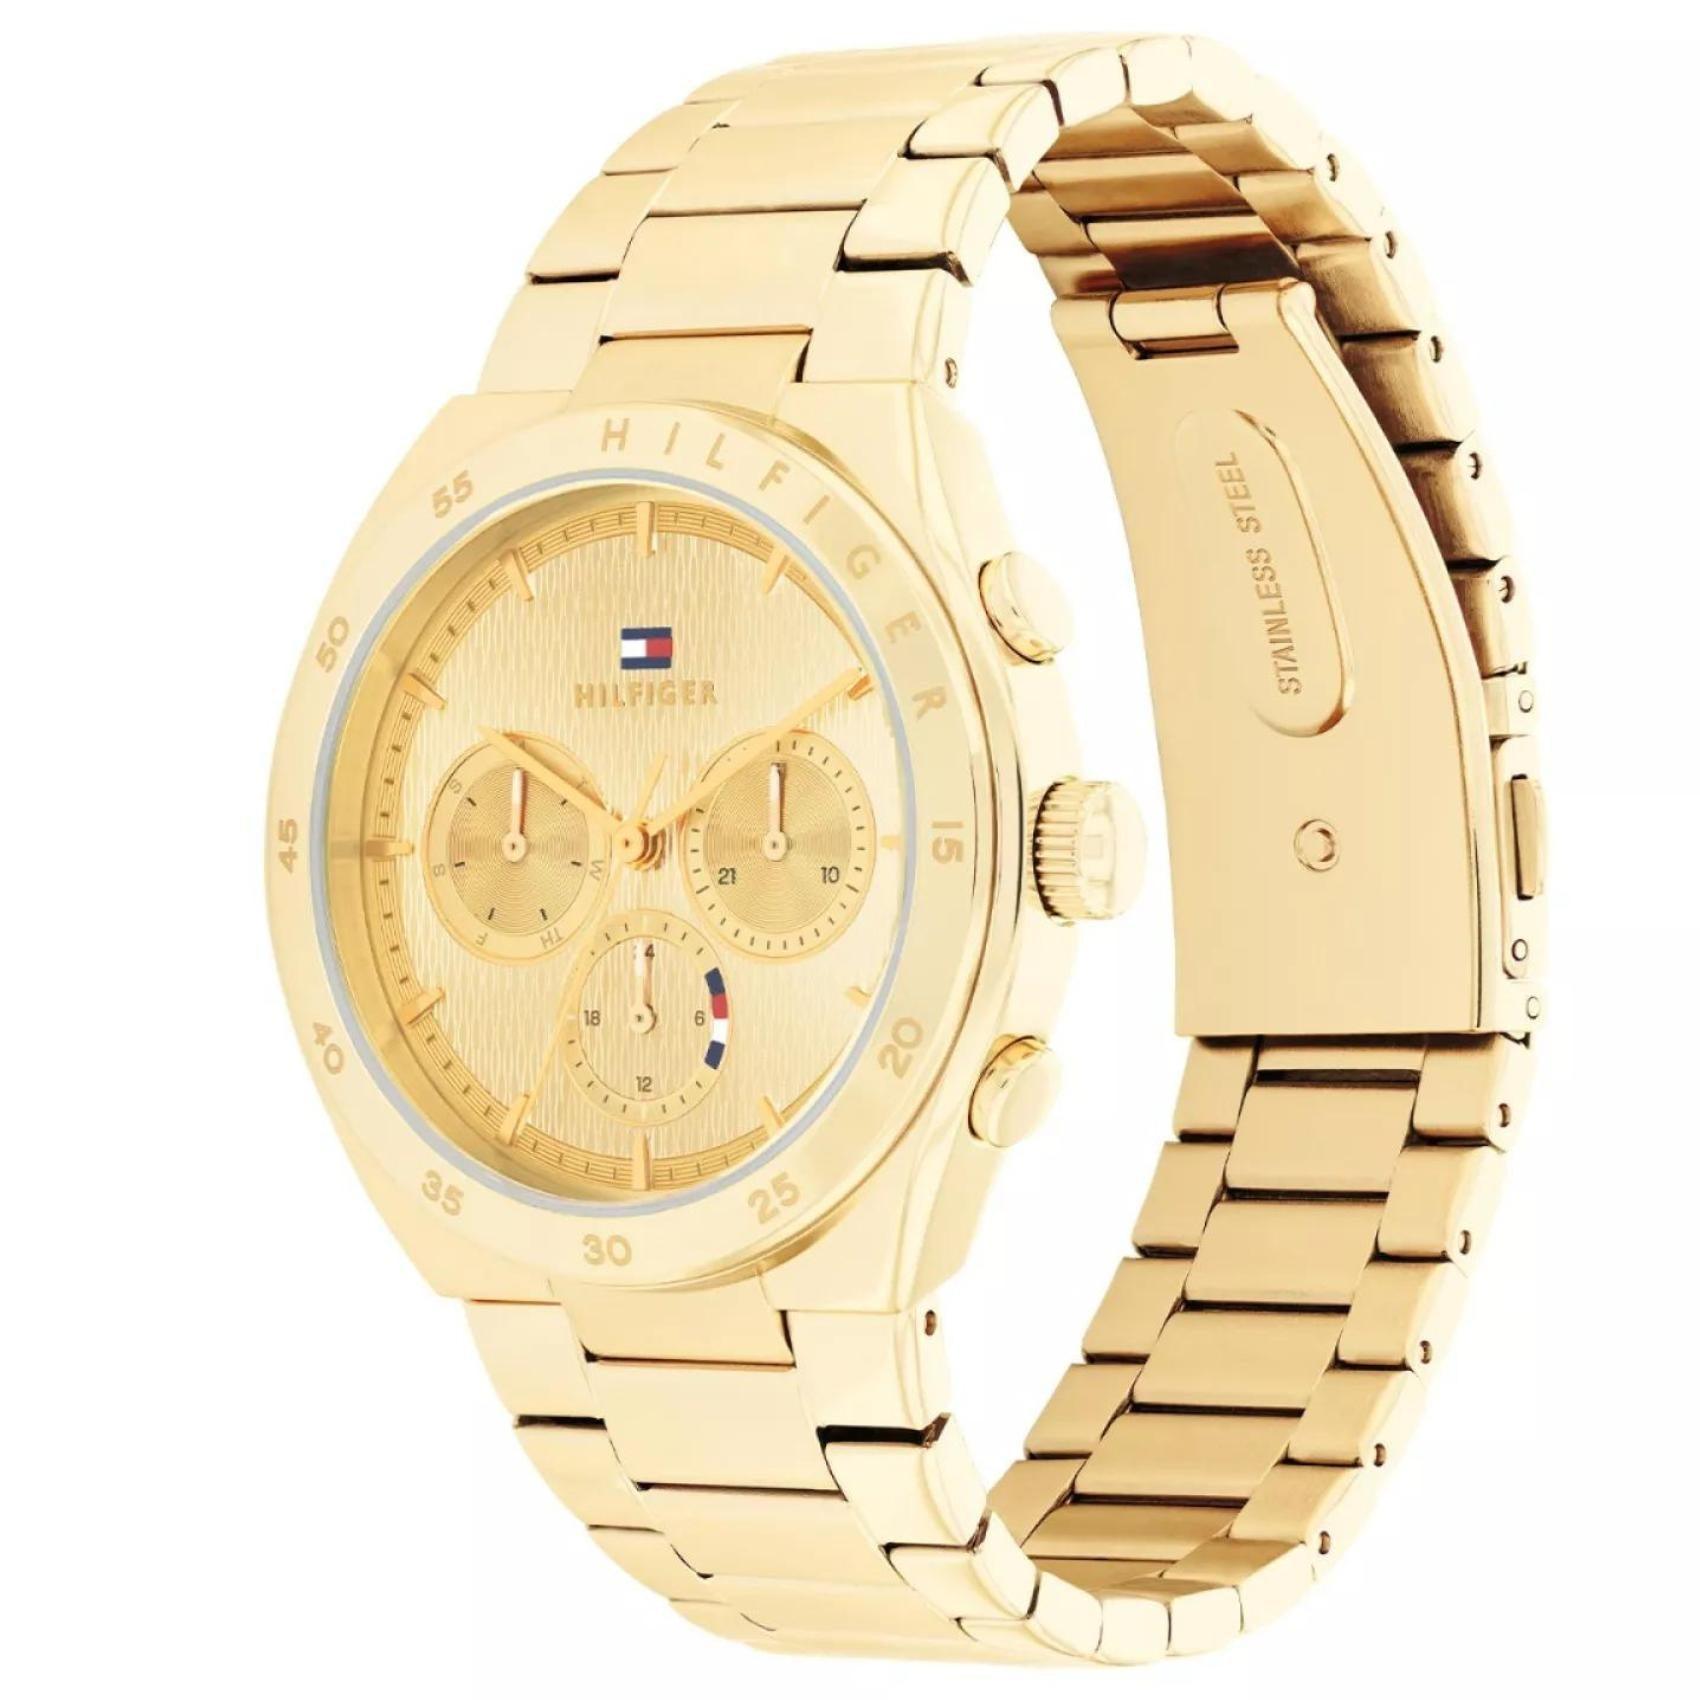 Γυναικείο ρολόι Tommy Hilfiger Carrie 1782575 με χρυσό ατσάλινο μπρασελέ και χρυσό καντράν διαμέτρου 38mm με ημέρα-ημερομηνία.